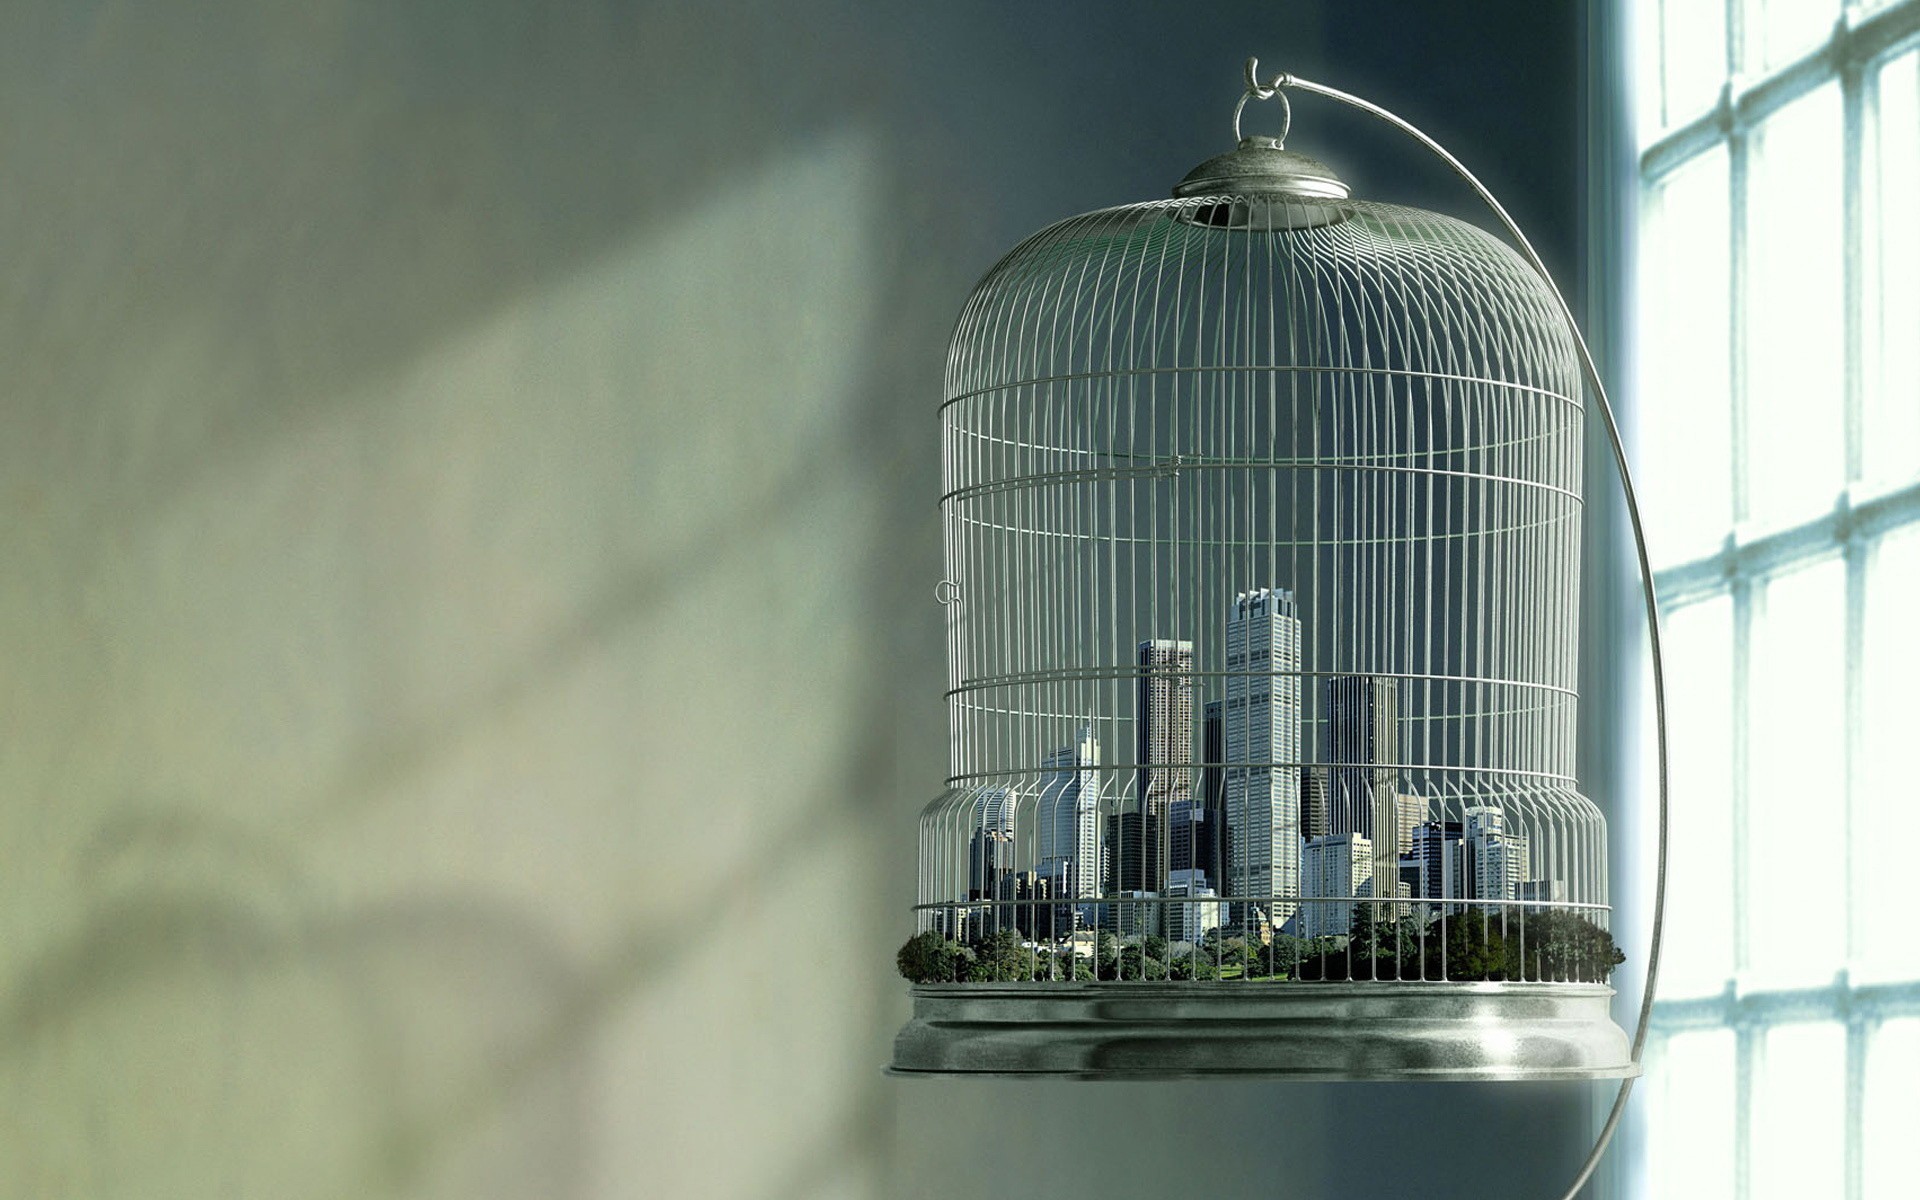 General 1920x1200 cages skyscraper digital art sunlight window city birdcage